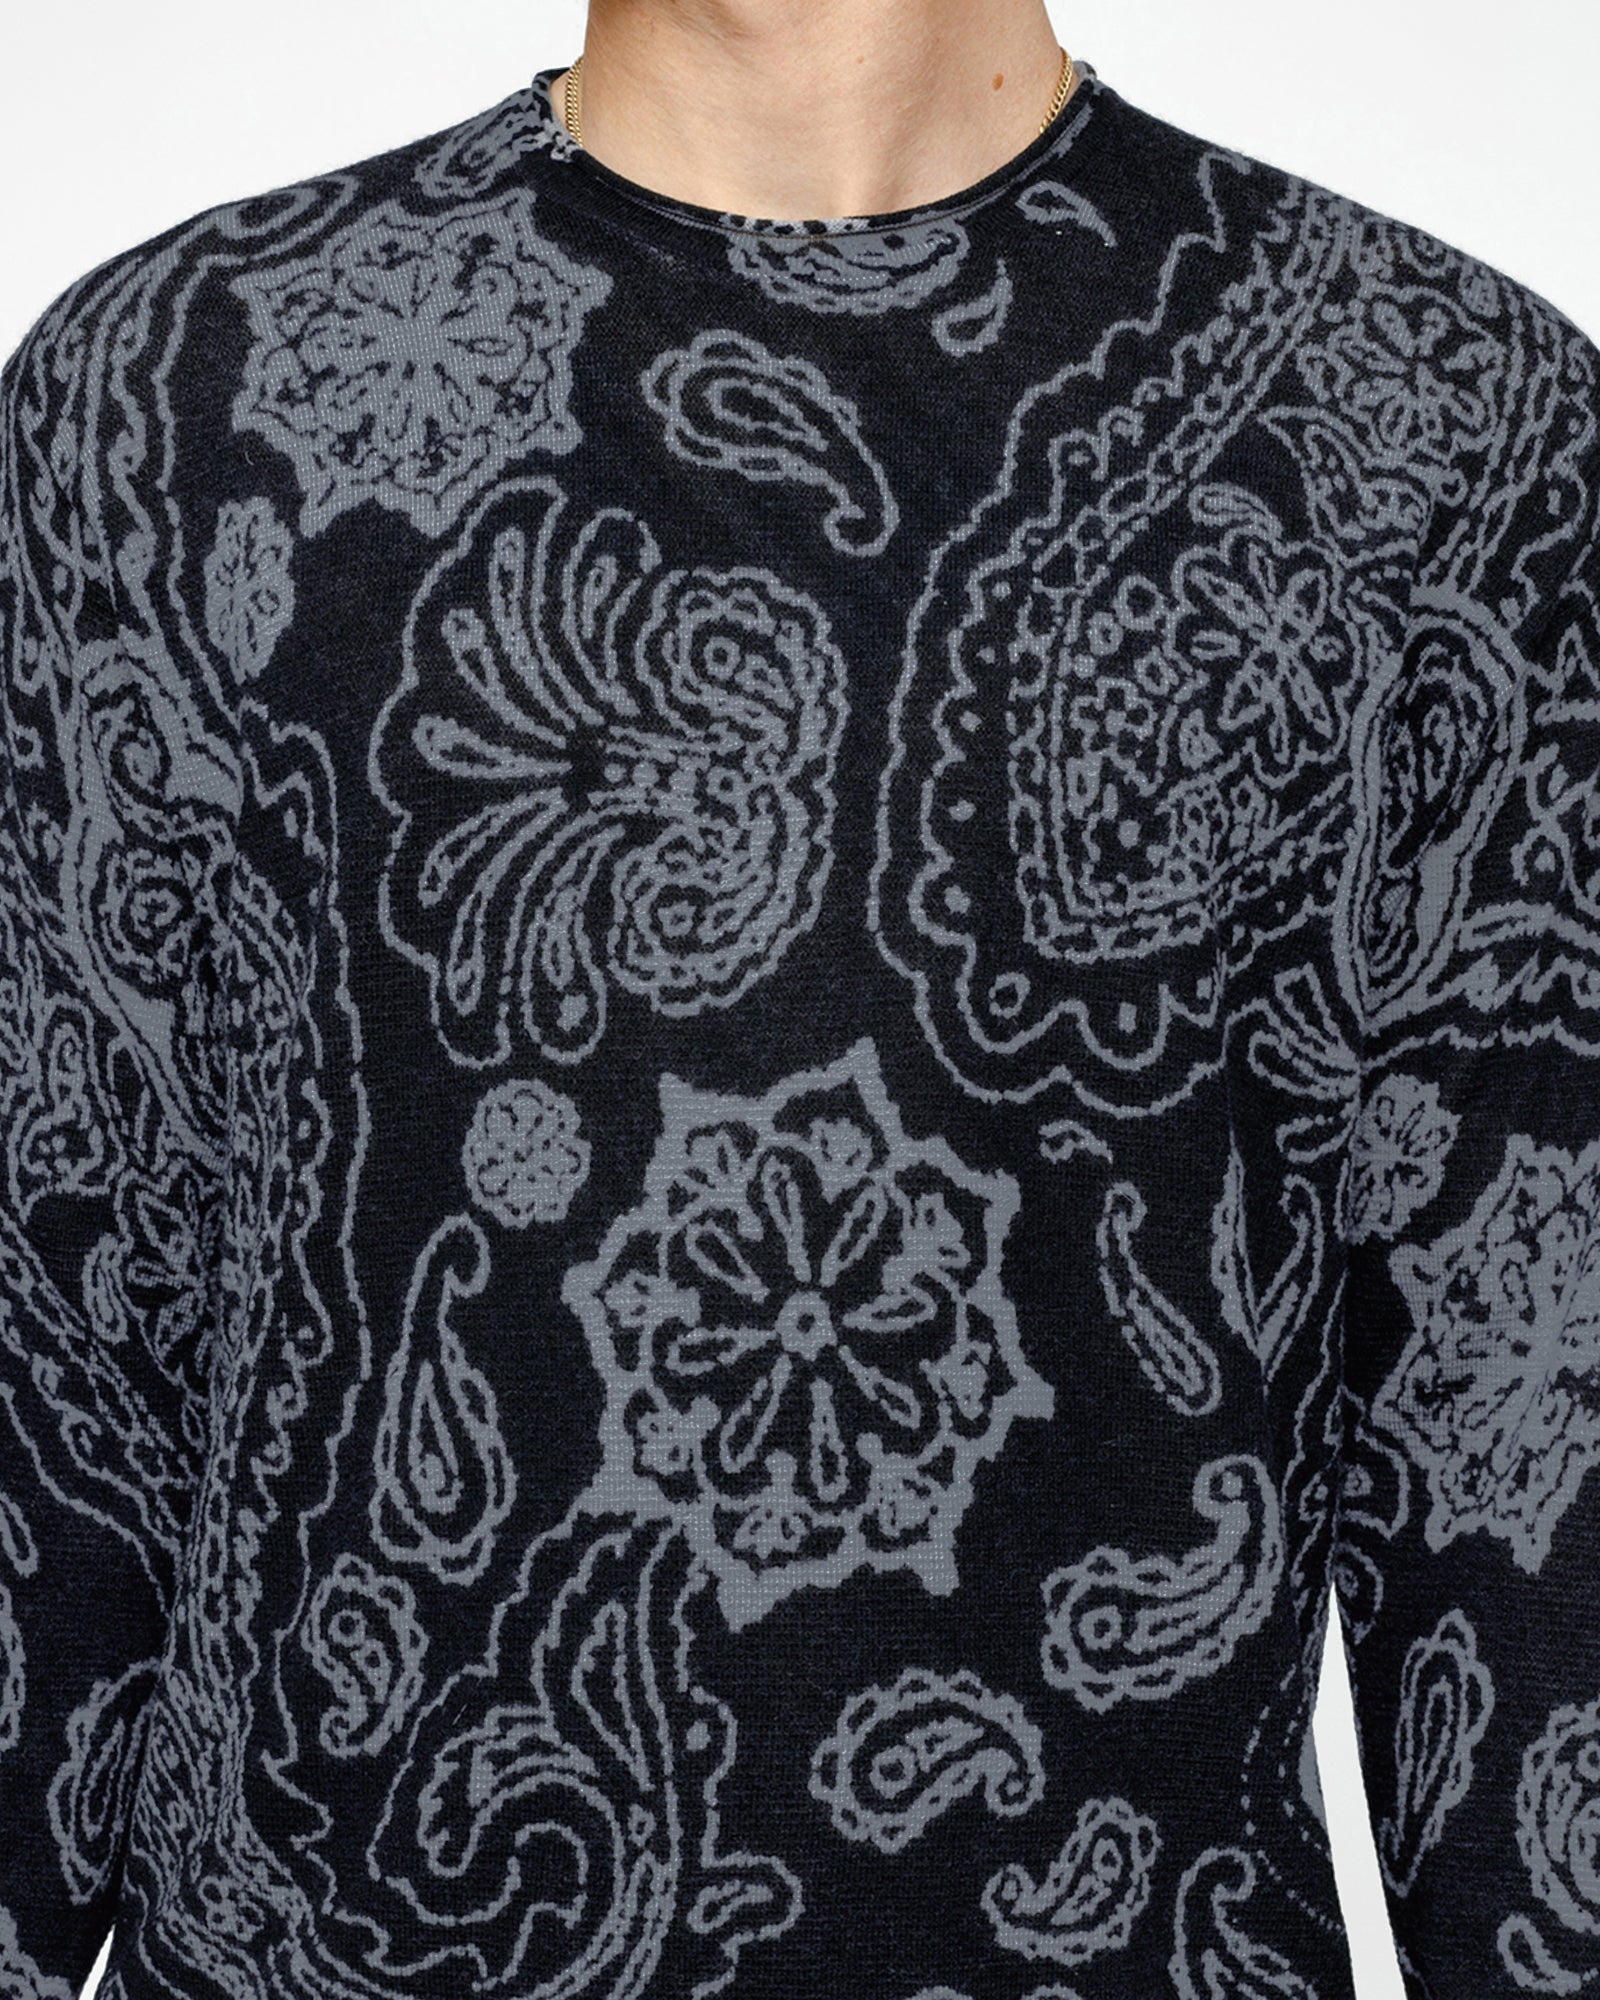 Stüssy Paisley Sweater Black Knit